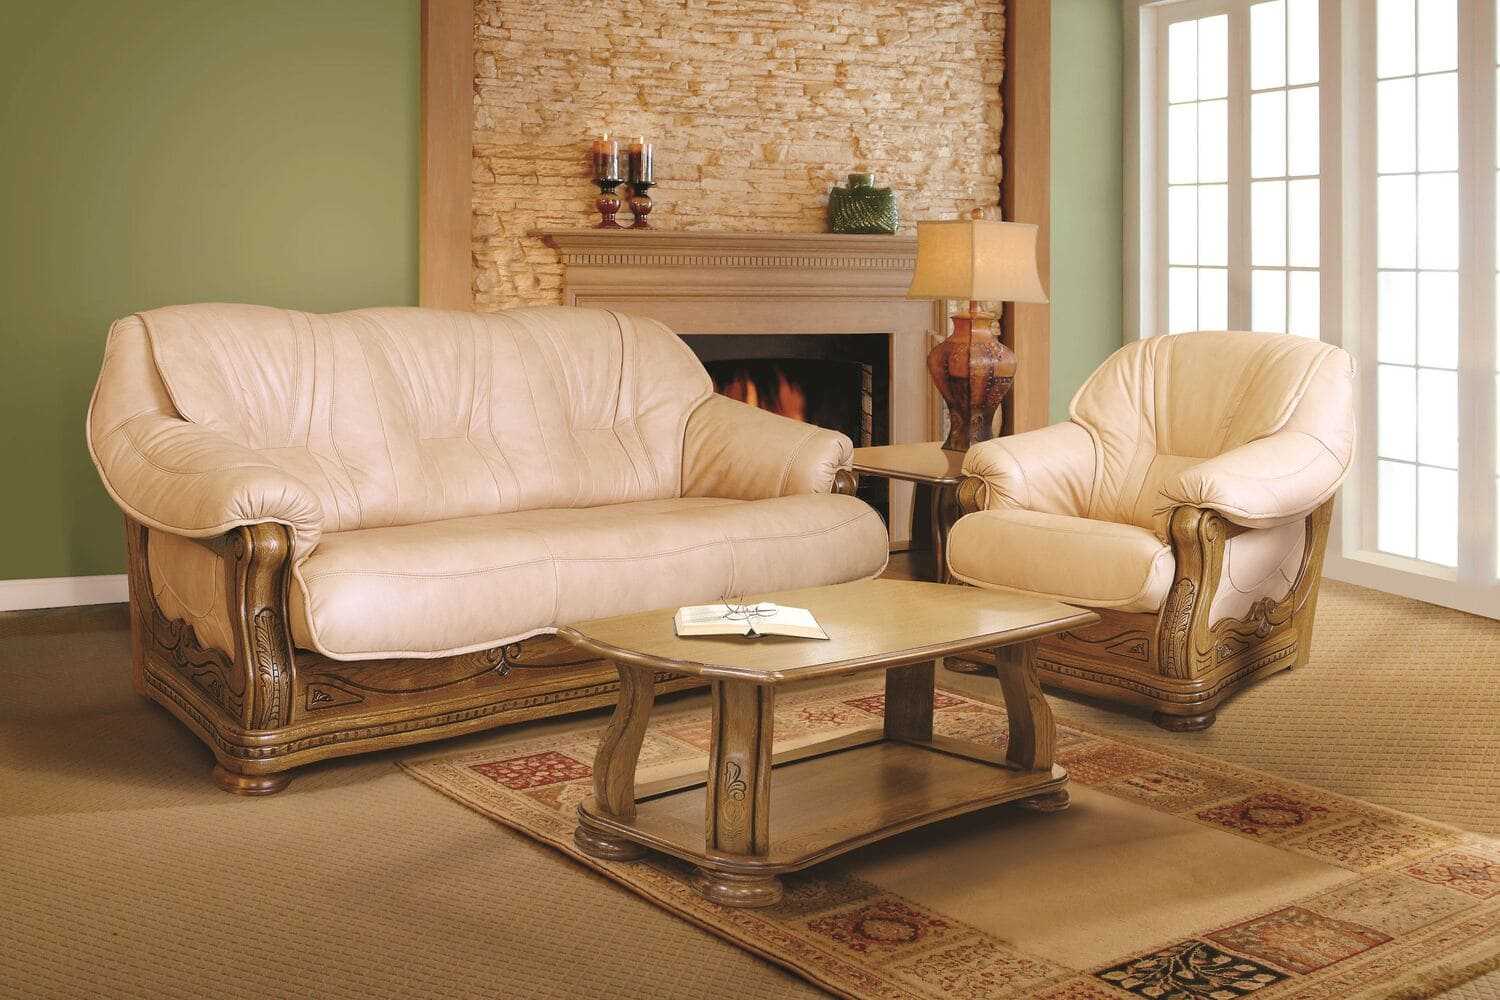 Какие бывают диваныКак выбрать подходящий вид дивана На что обращать внимание при выборе Достоинства и недостатки различных видов диванов